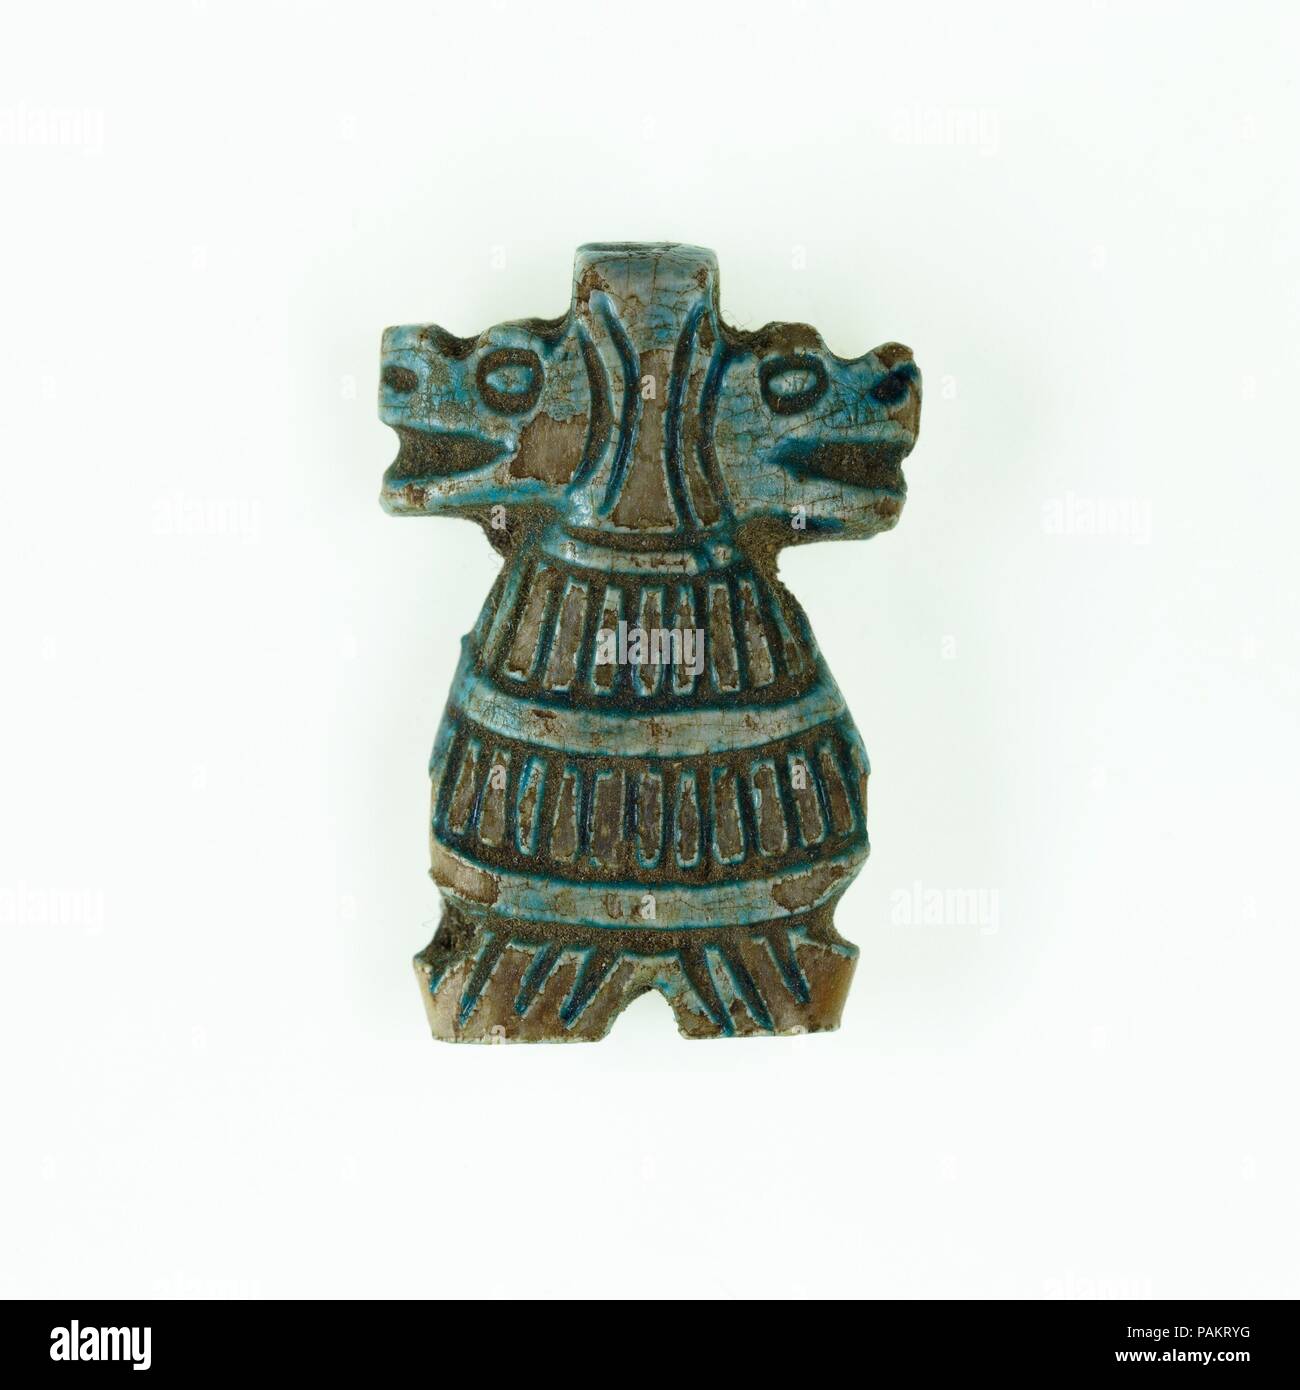 Taweret amulet avec double tête. Dimensions : H. 2 cm (13/16 in.) ; W. 1,4 cm (9/16 po.) ; D. 0,4 cm (3/16 po.). Dynastie DYNASTIE : 18, fin-Dynasty 19. Date : ca. 1390-1213 av. J.-C.. Des amulettes à deux têtes de la déesse Taweret domestique sont les formes rares et date de la xviiie dynastie,. Amarna est connu parmi les findspots pour ceux-ci, bien que cet exemple particulier est sans provenance. Musée : Metropolitan Museum of Art, New York, USA. Banque D'Images